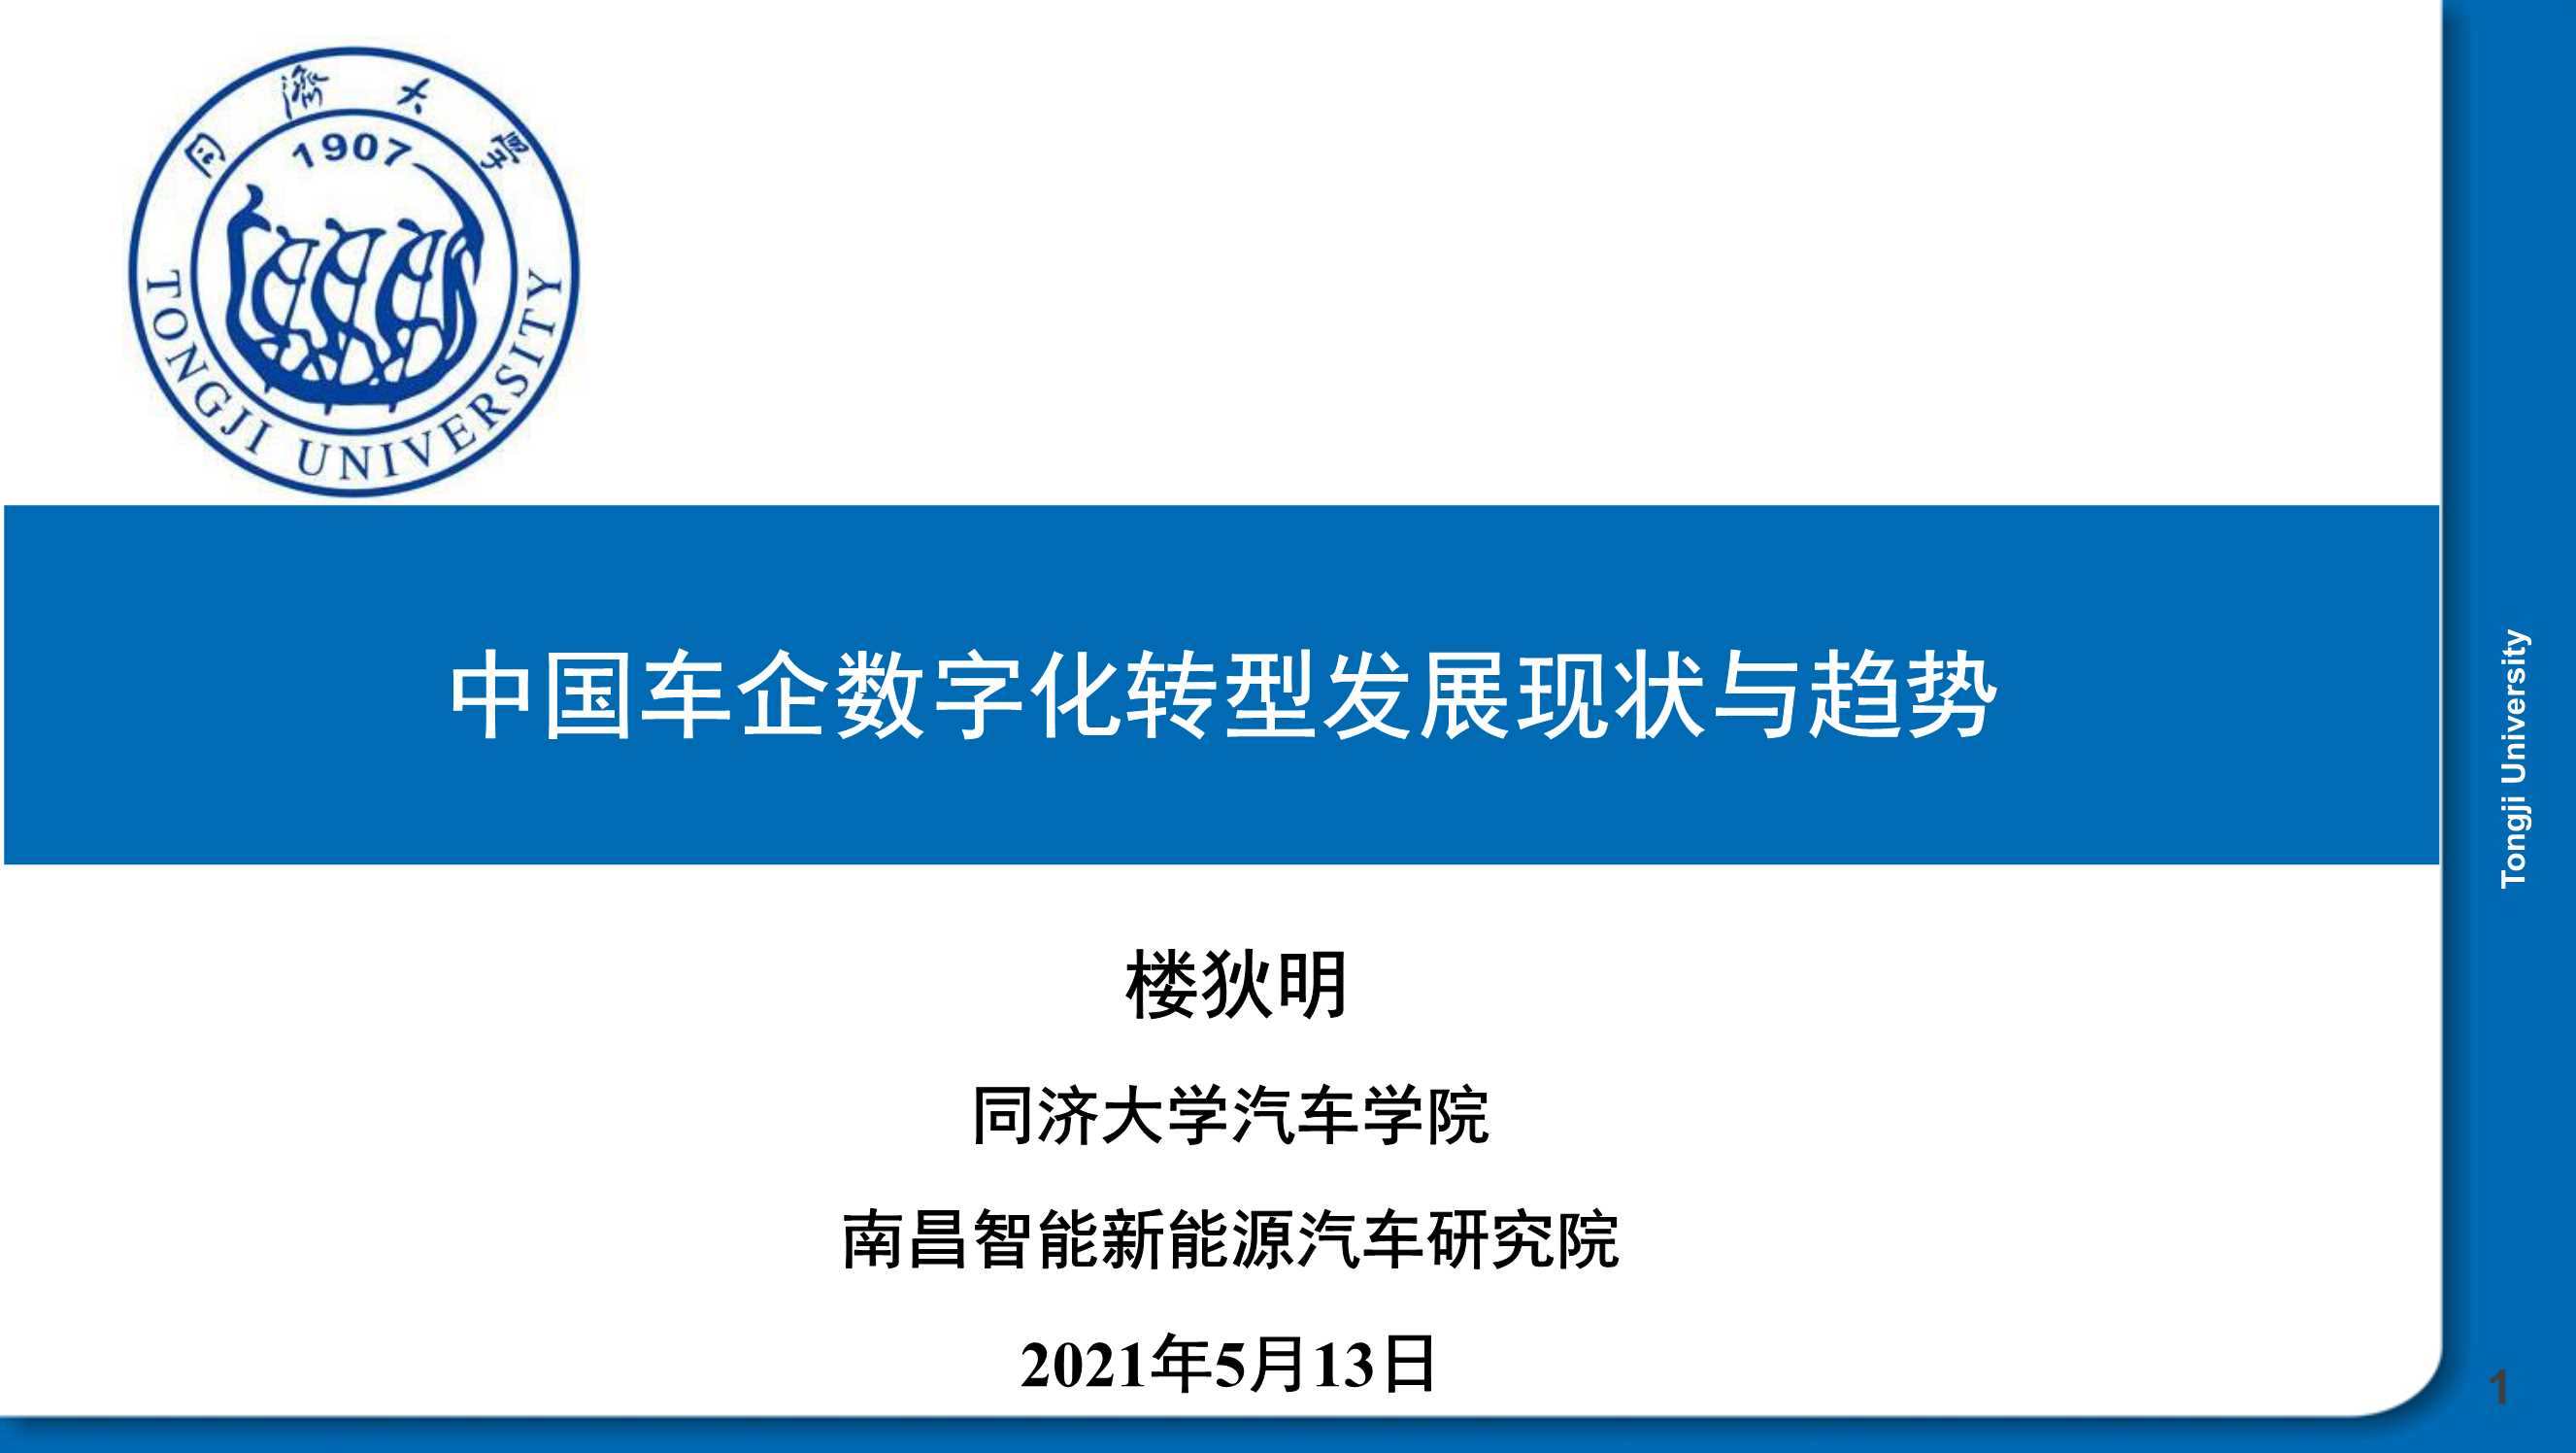 同济大学汽车学院-2021中国车企数字化转型发展现状与趋势-2021.05-33页